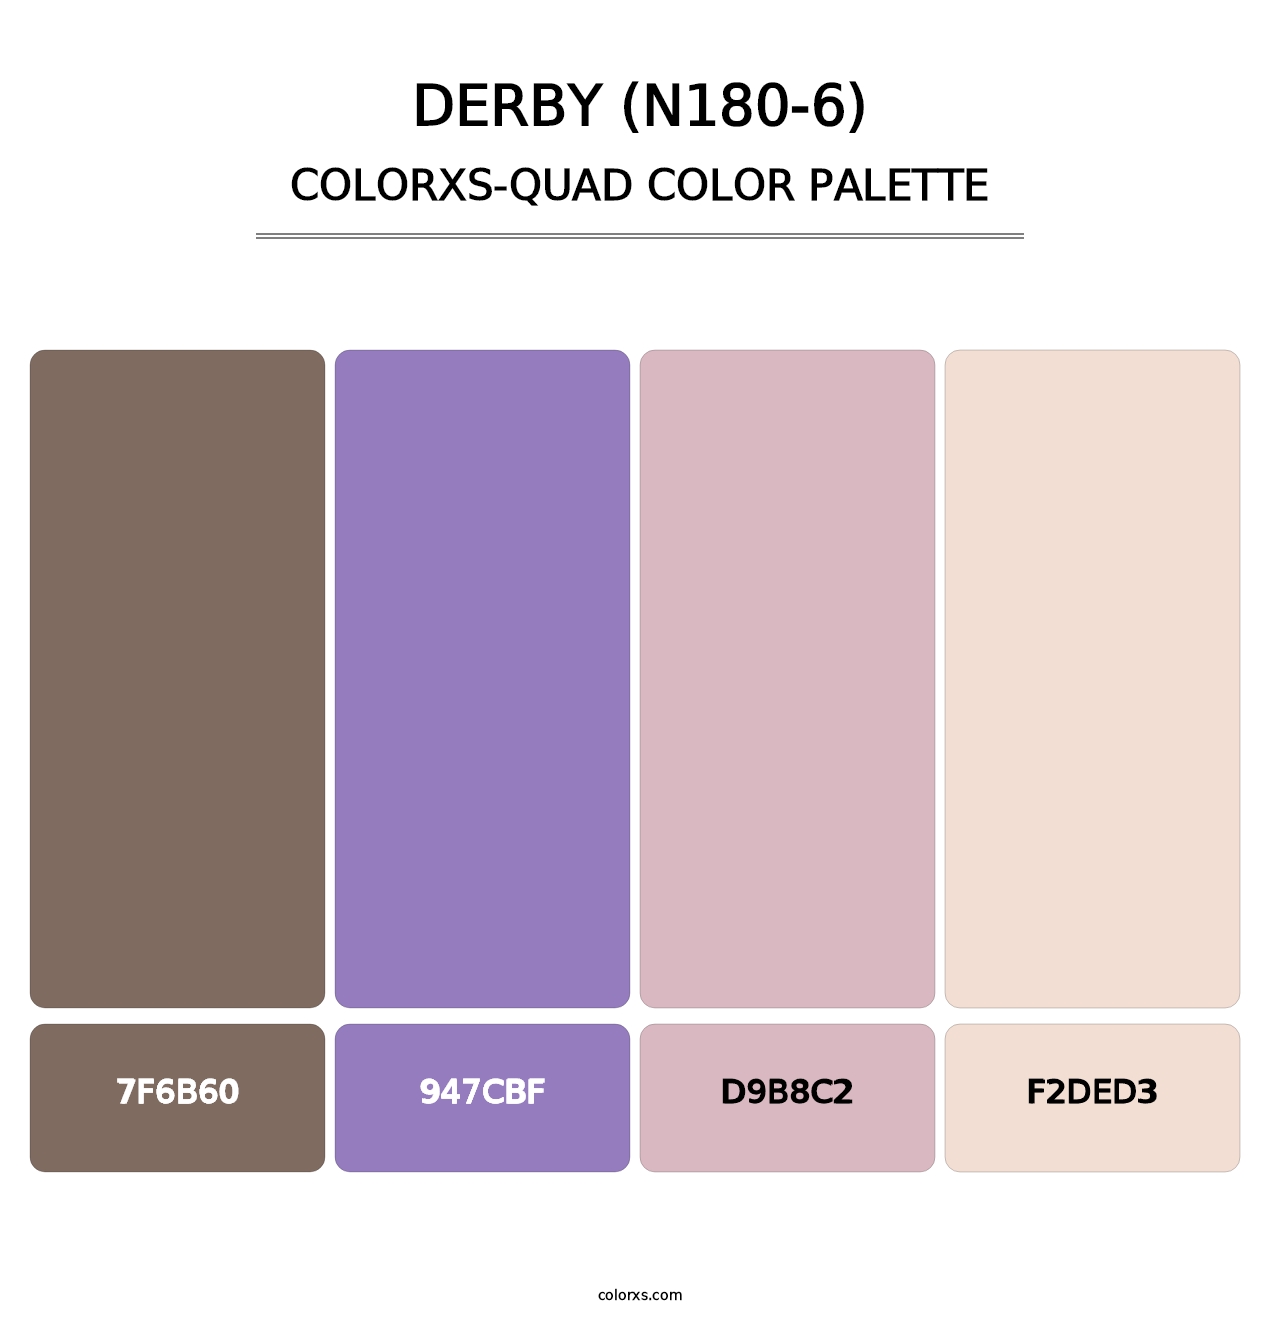 Derby (N180-6) - Colorxs Quad Palette